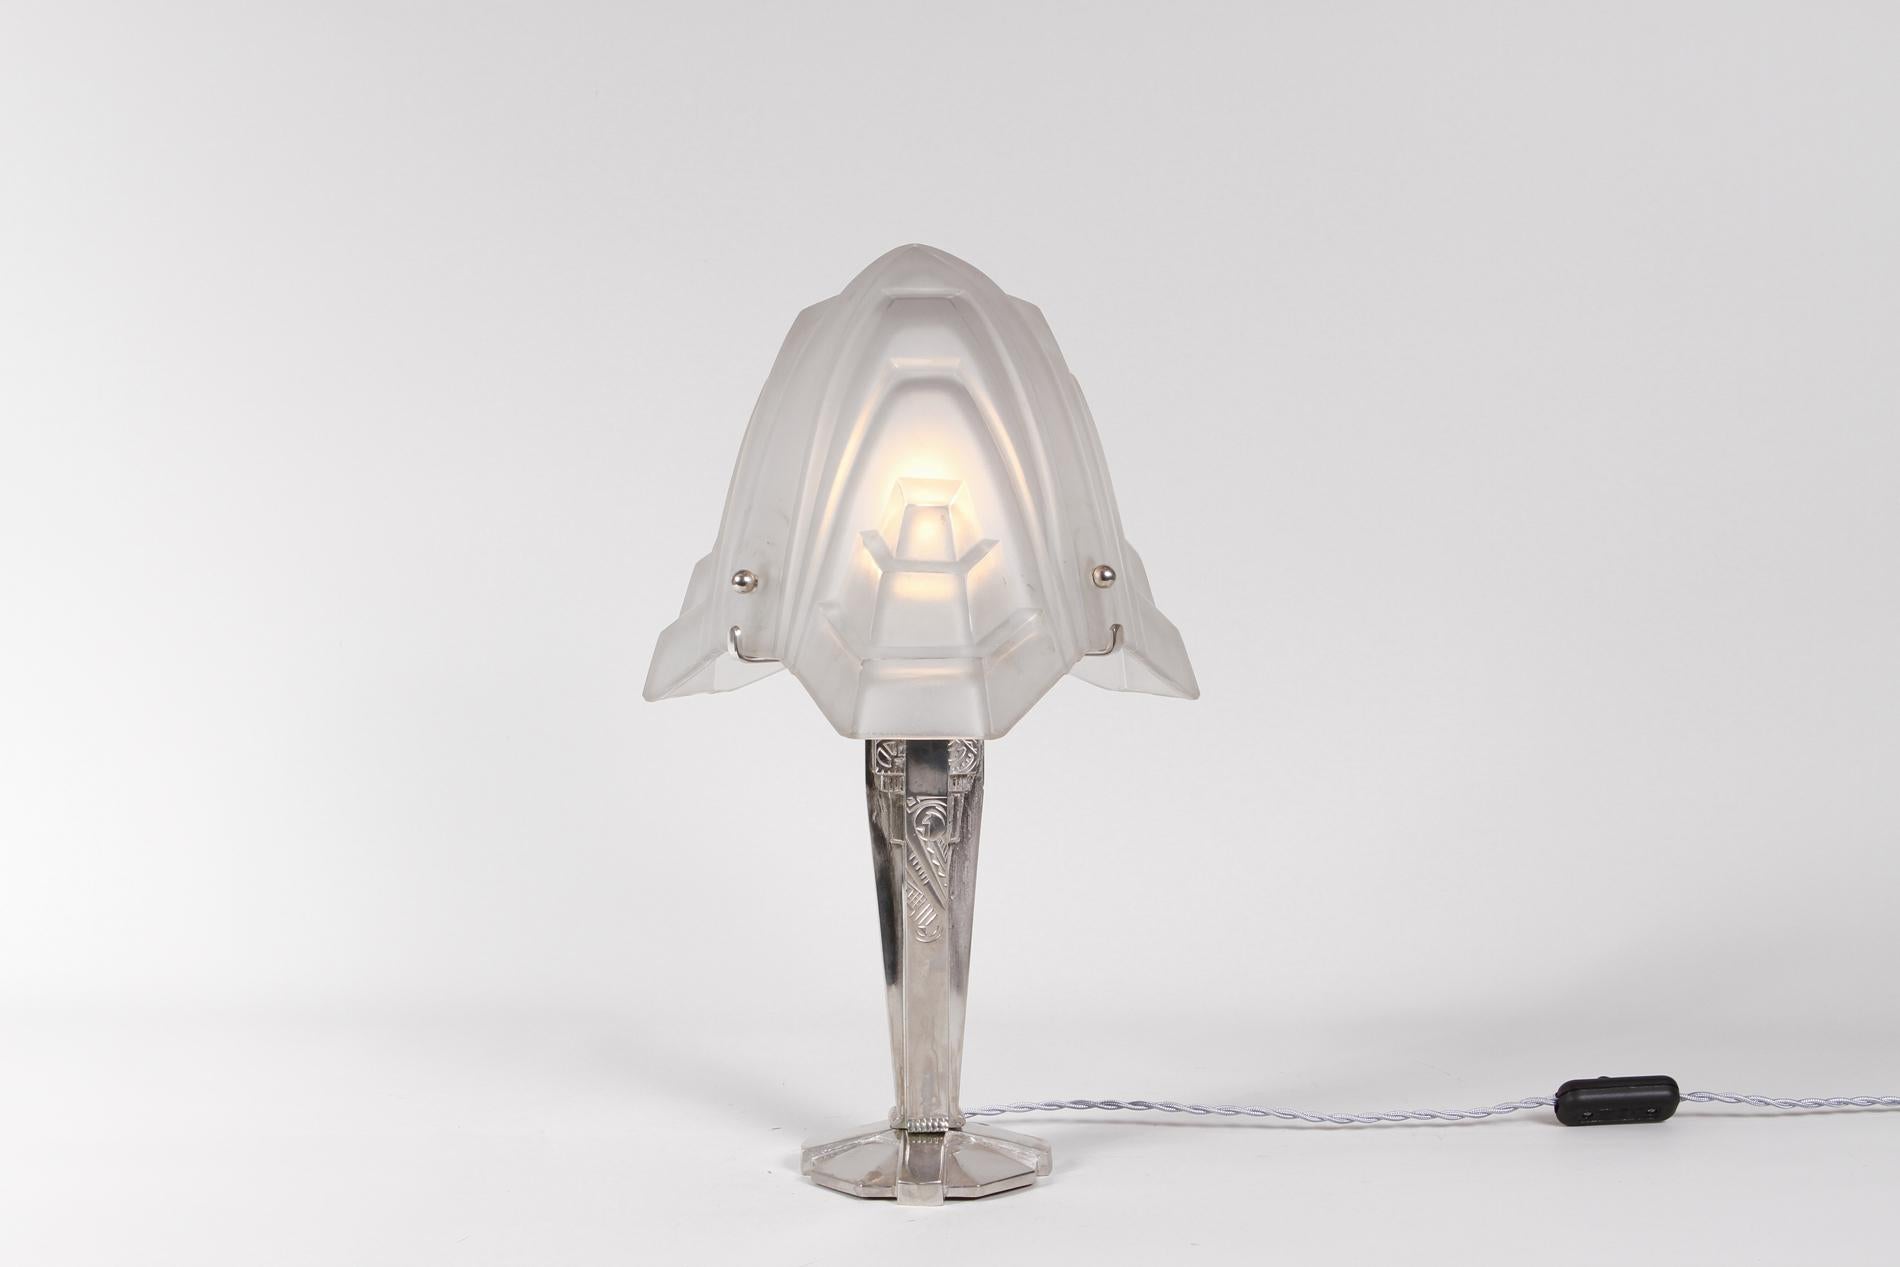 Lampe de table Art déco française avec bronze nickelé pour la base et abat-jour en verre de Degué, 1930. 

La particularité de cette lampe réside dans la forme du verre, conçu comme une fleur, et dans la base avec un délicat décor floral apportant